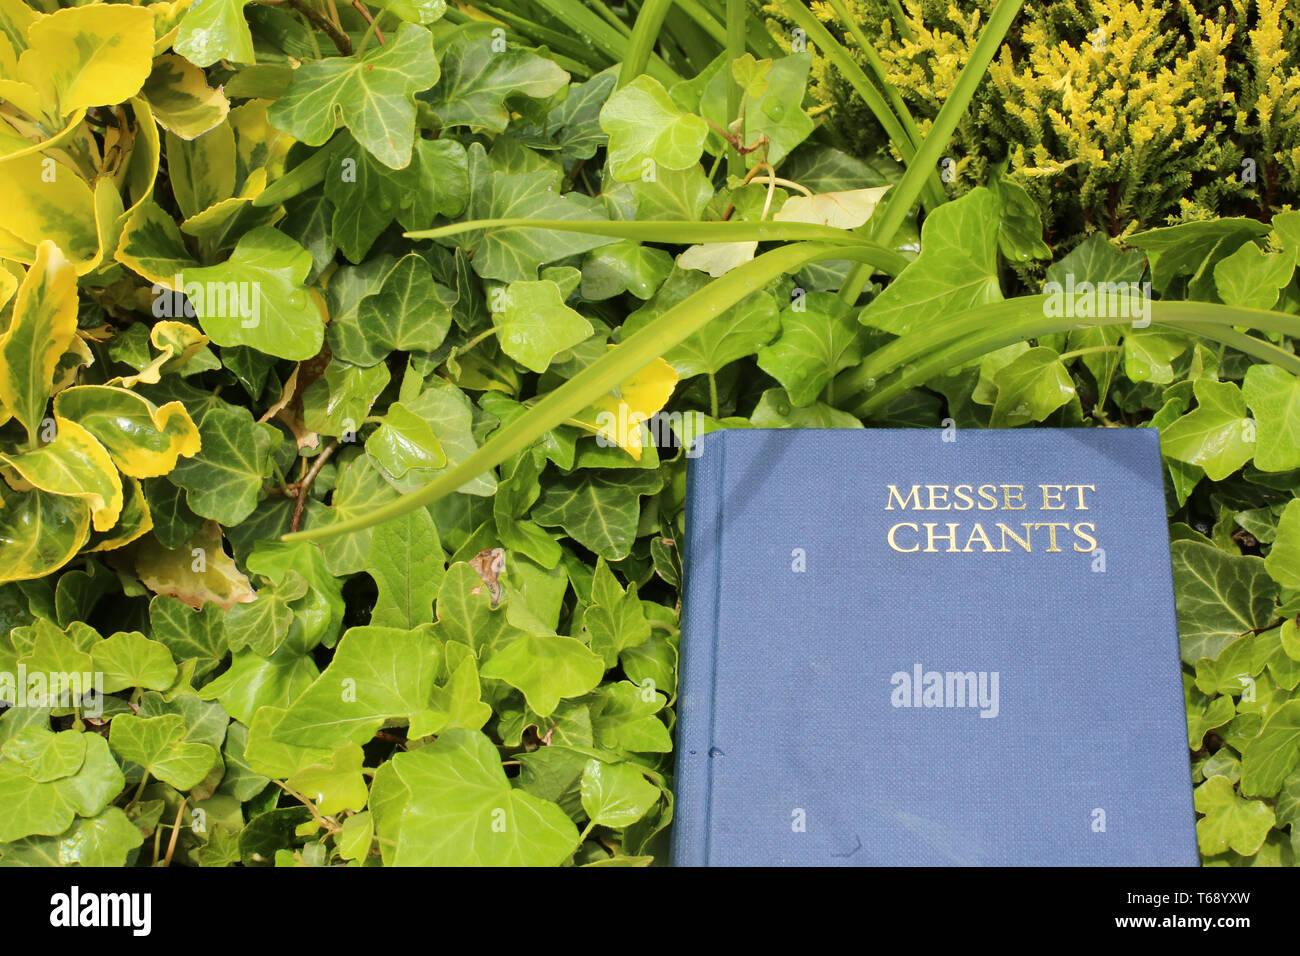 Livre de messe et chants dans des plantes vertes. Foto Stock